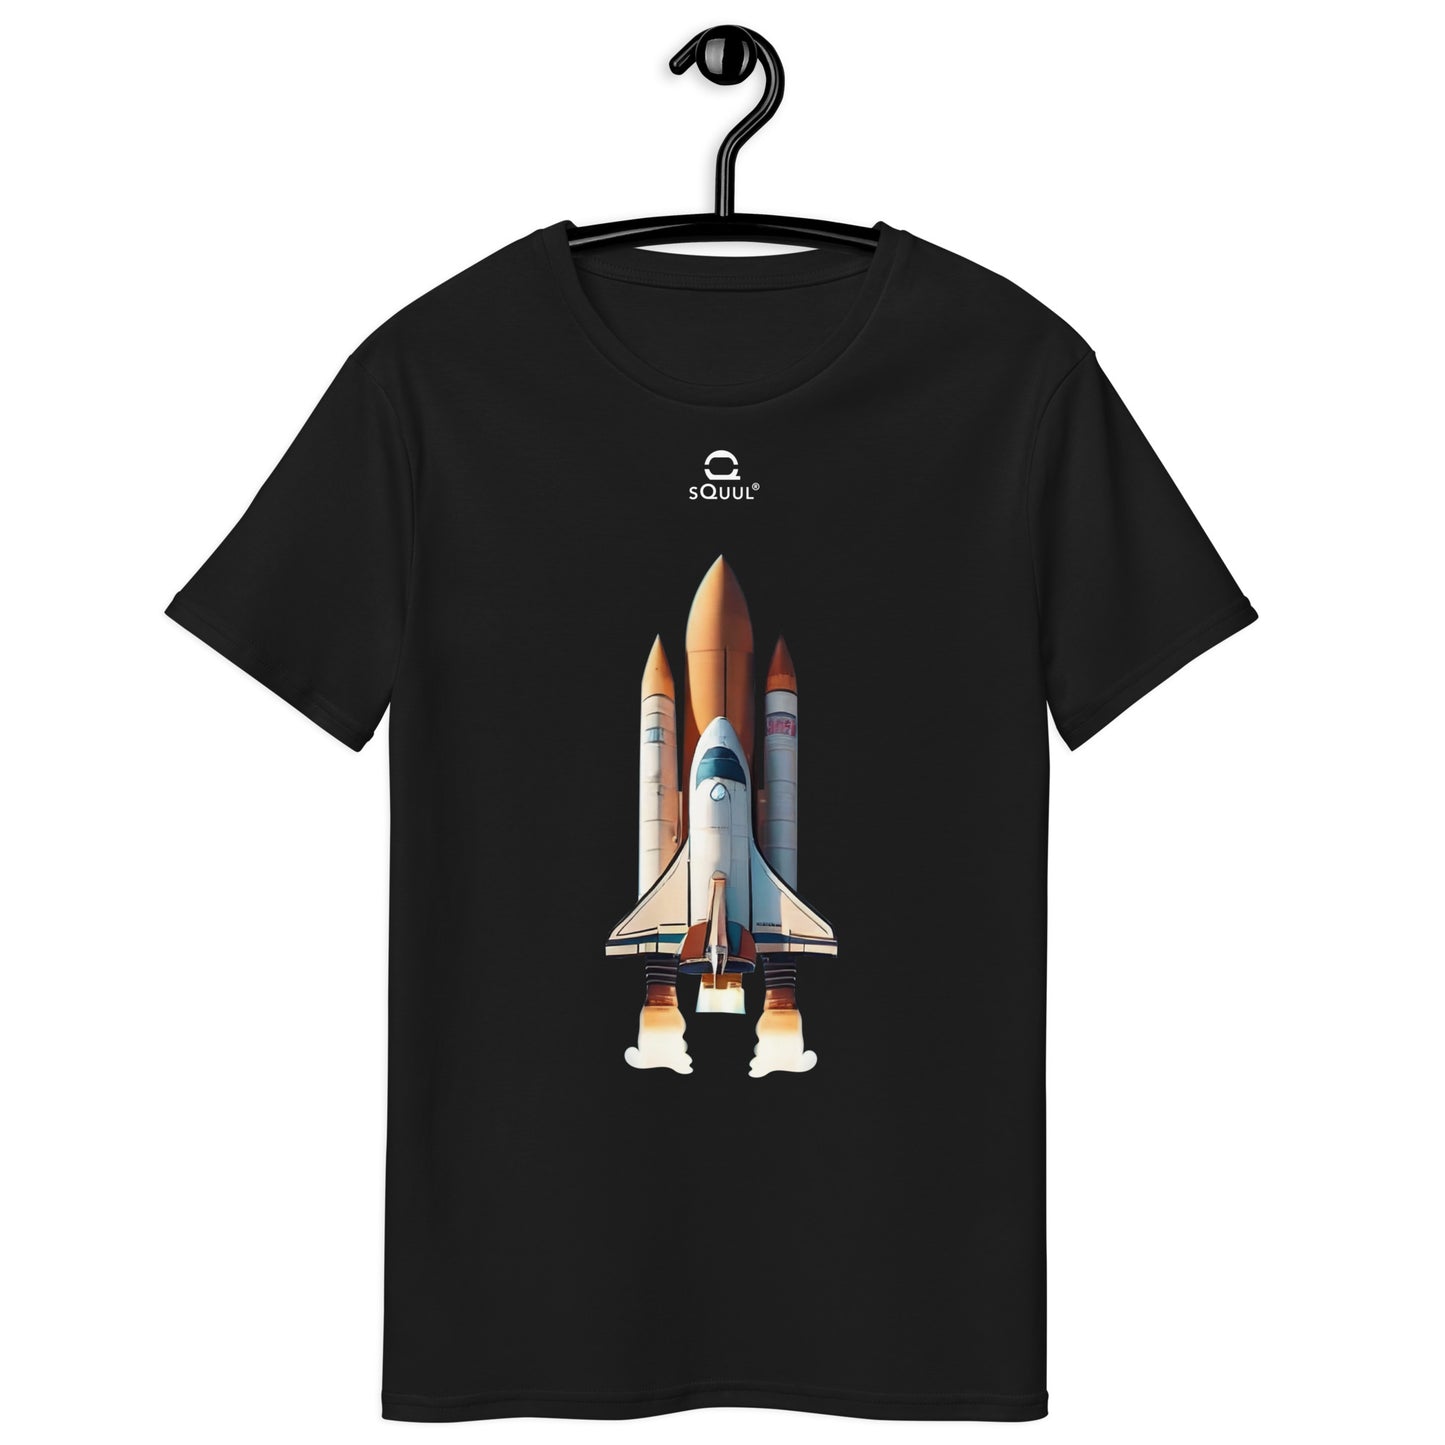 Men's Premium Cotton T-Shirt Spaceship #SquulOfAerospace